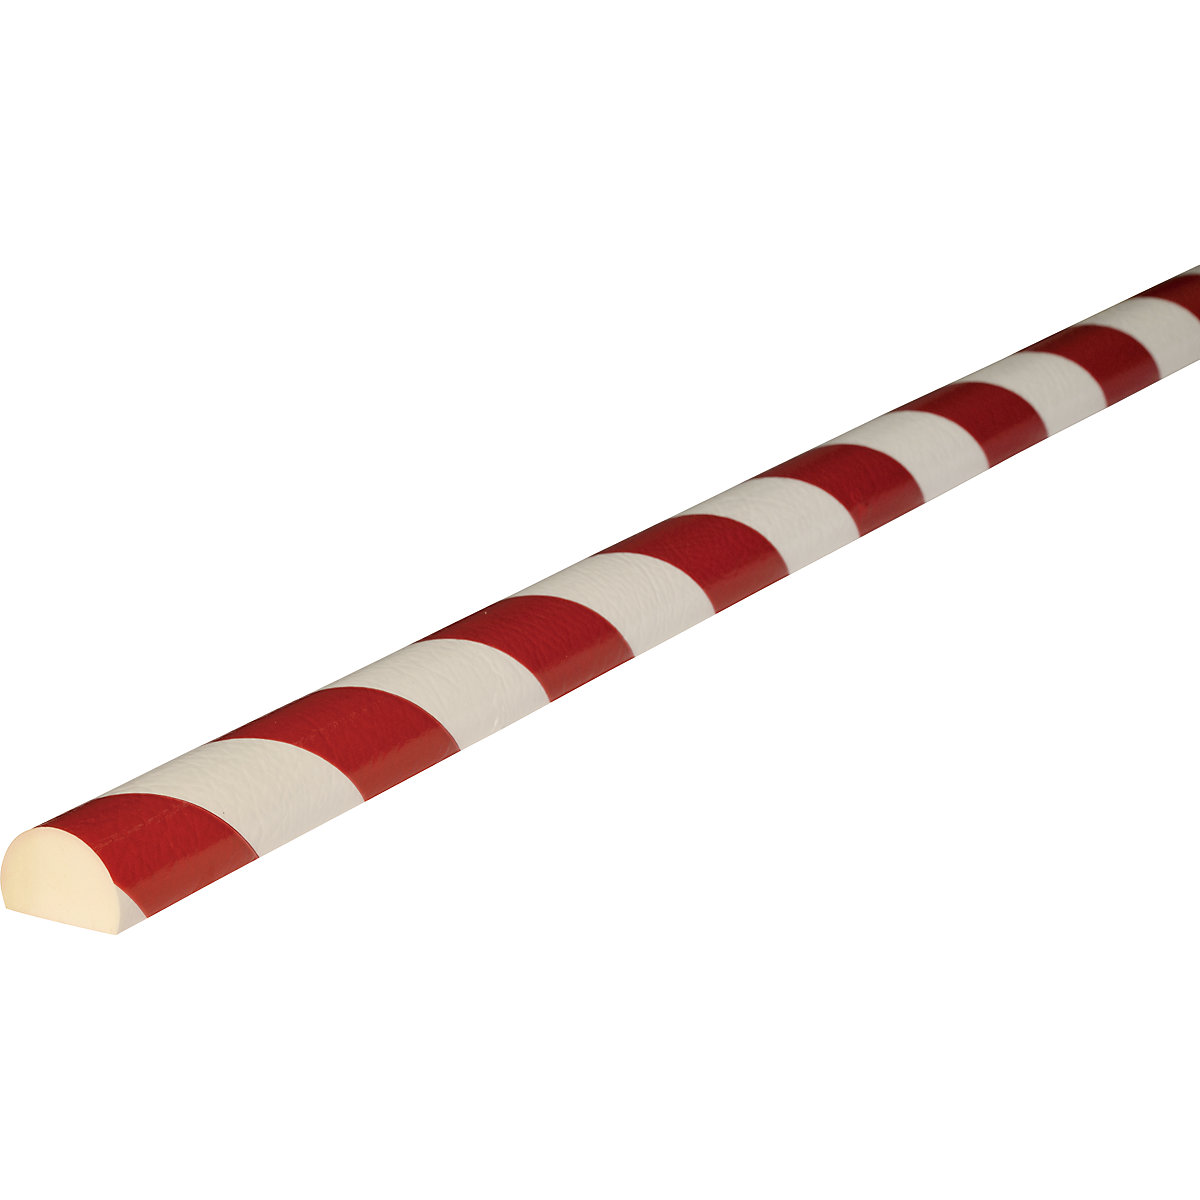 Protección de superficies Knuffi® – SHG, tipo C, 1 rollo de 5 m, en rojo y blanco-23